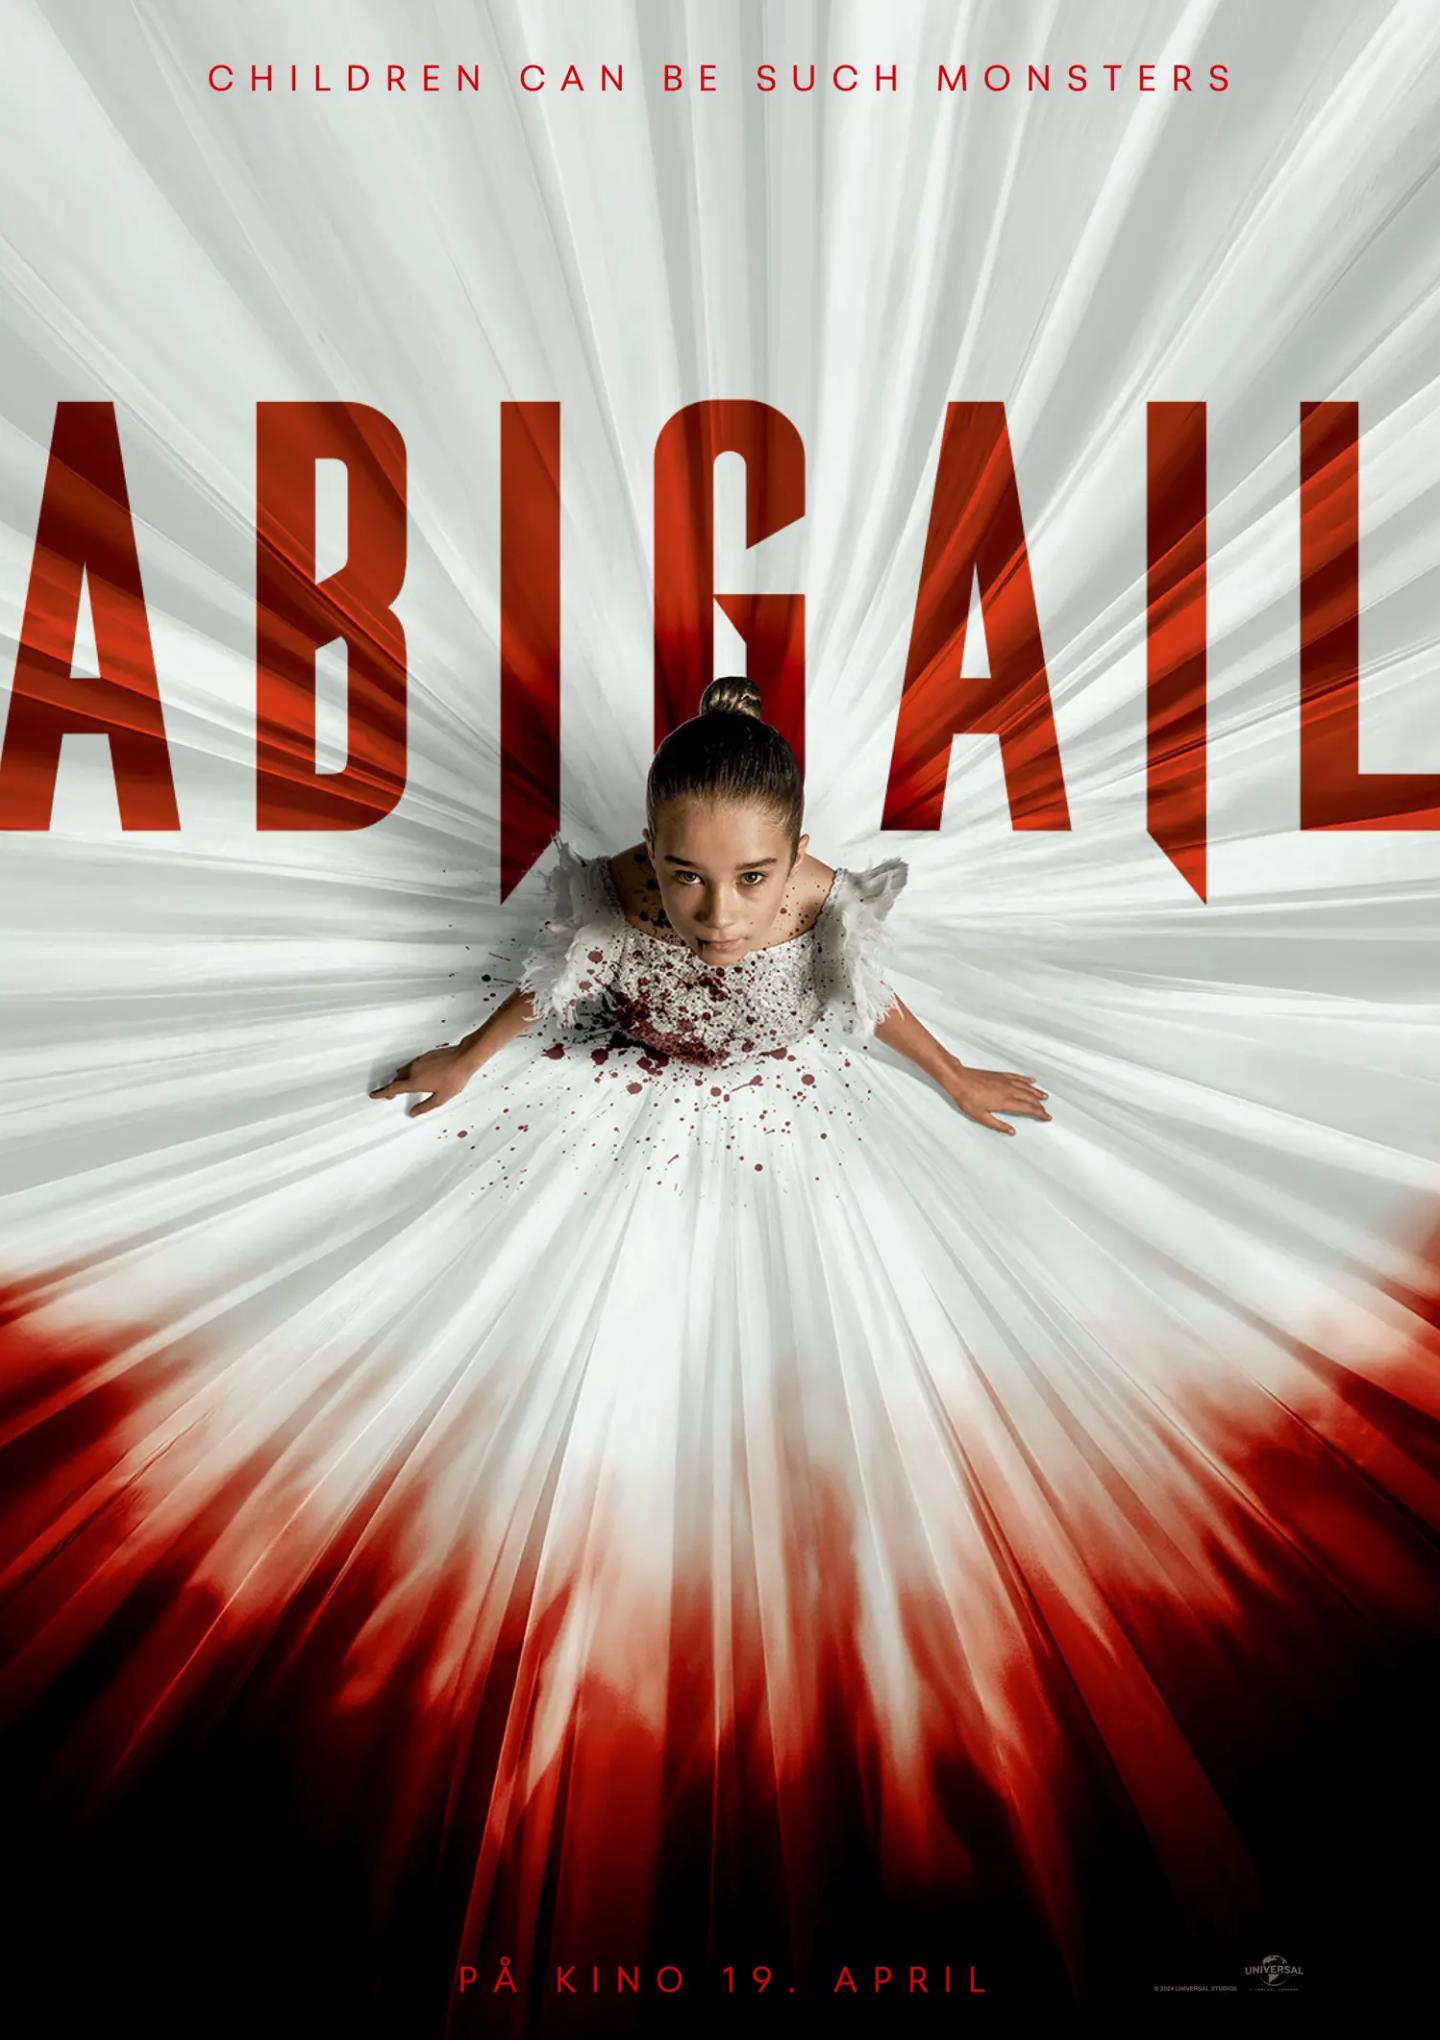 Plakat for 'Abigail'